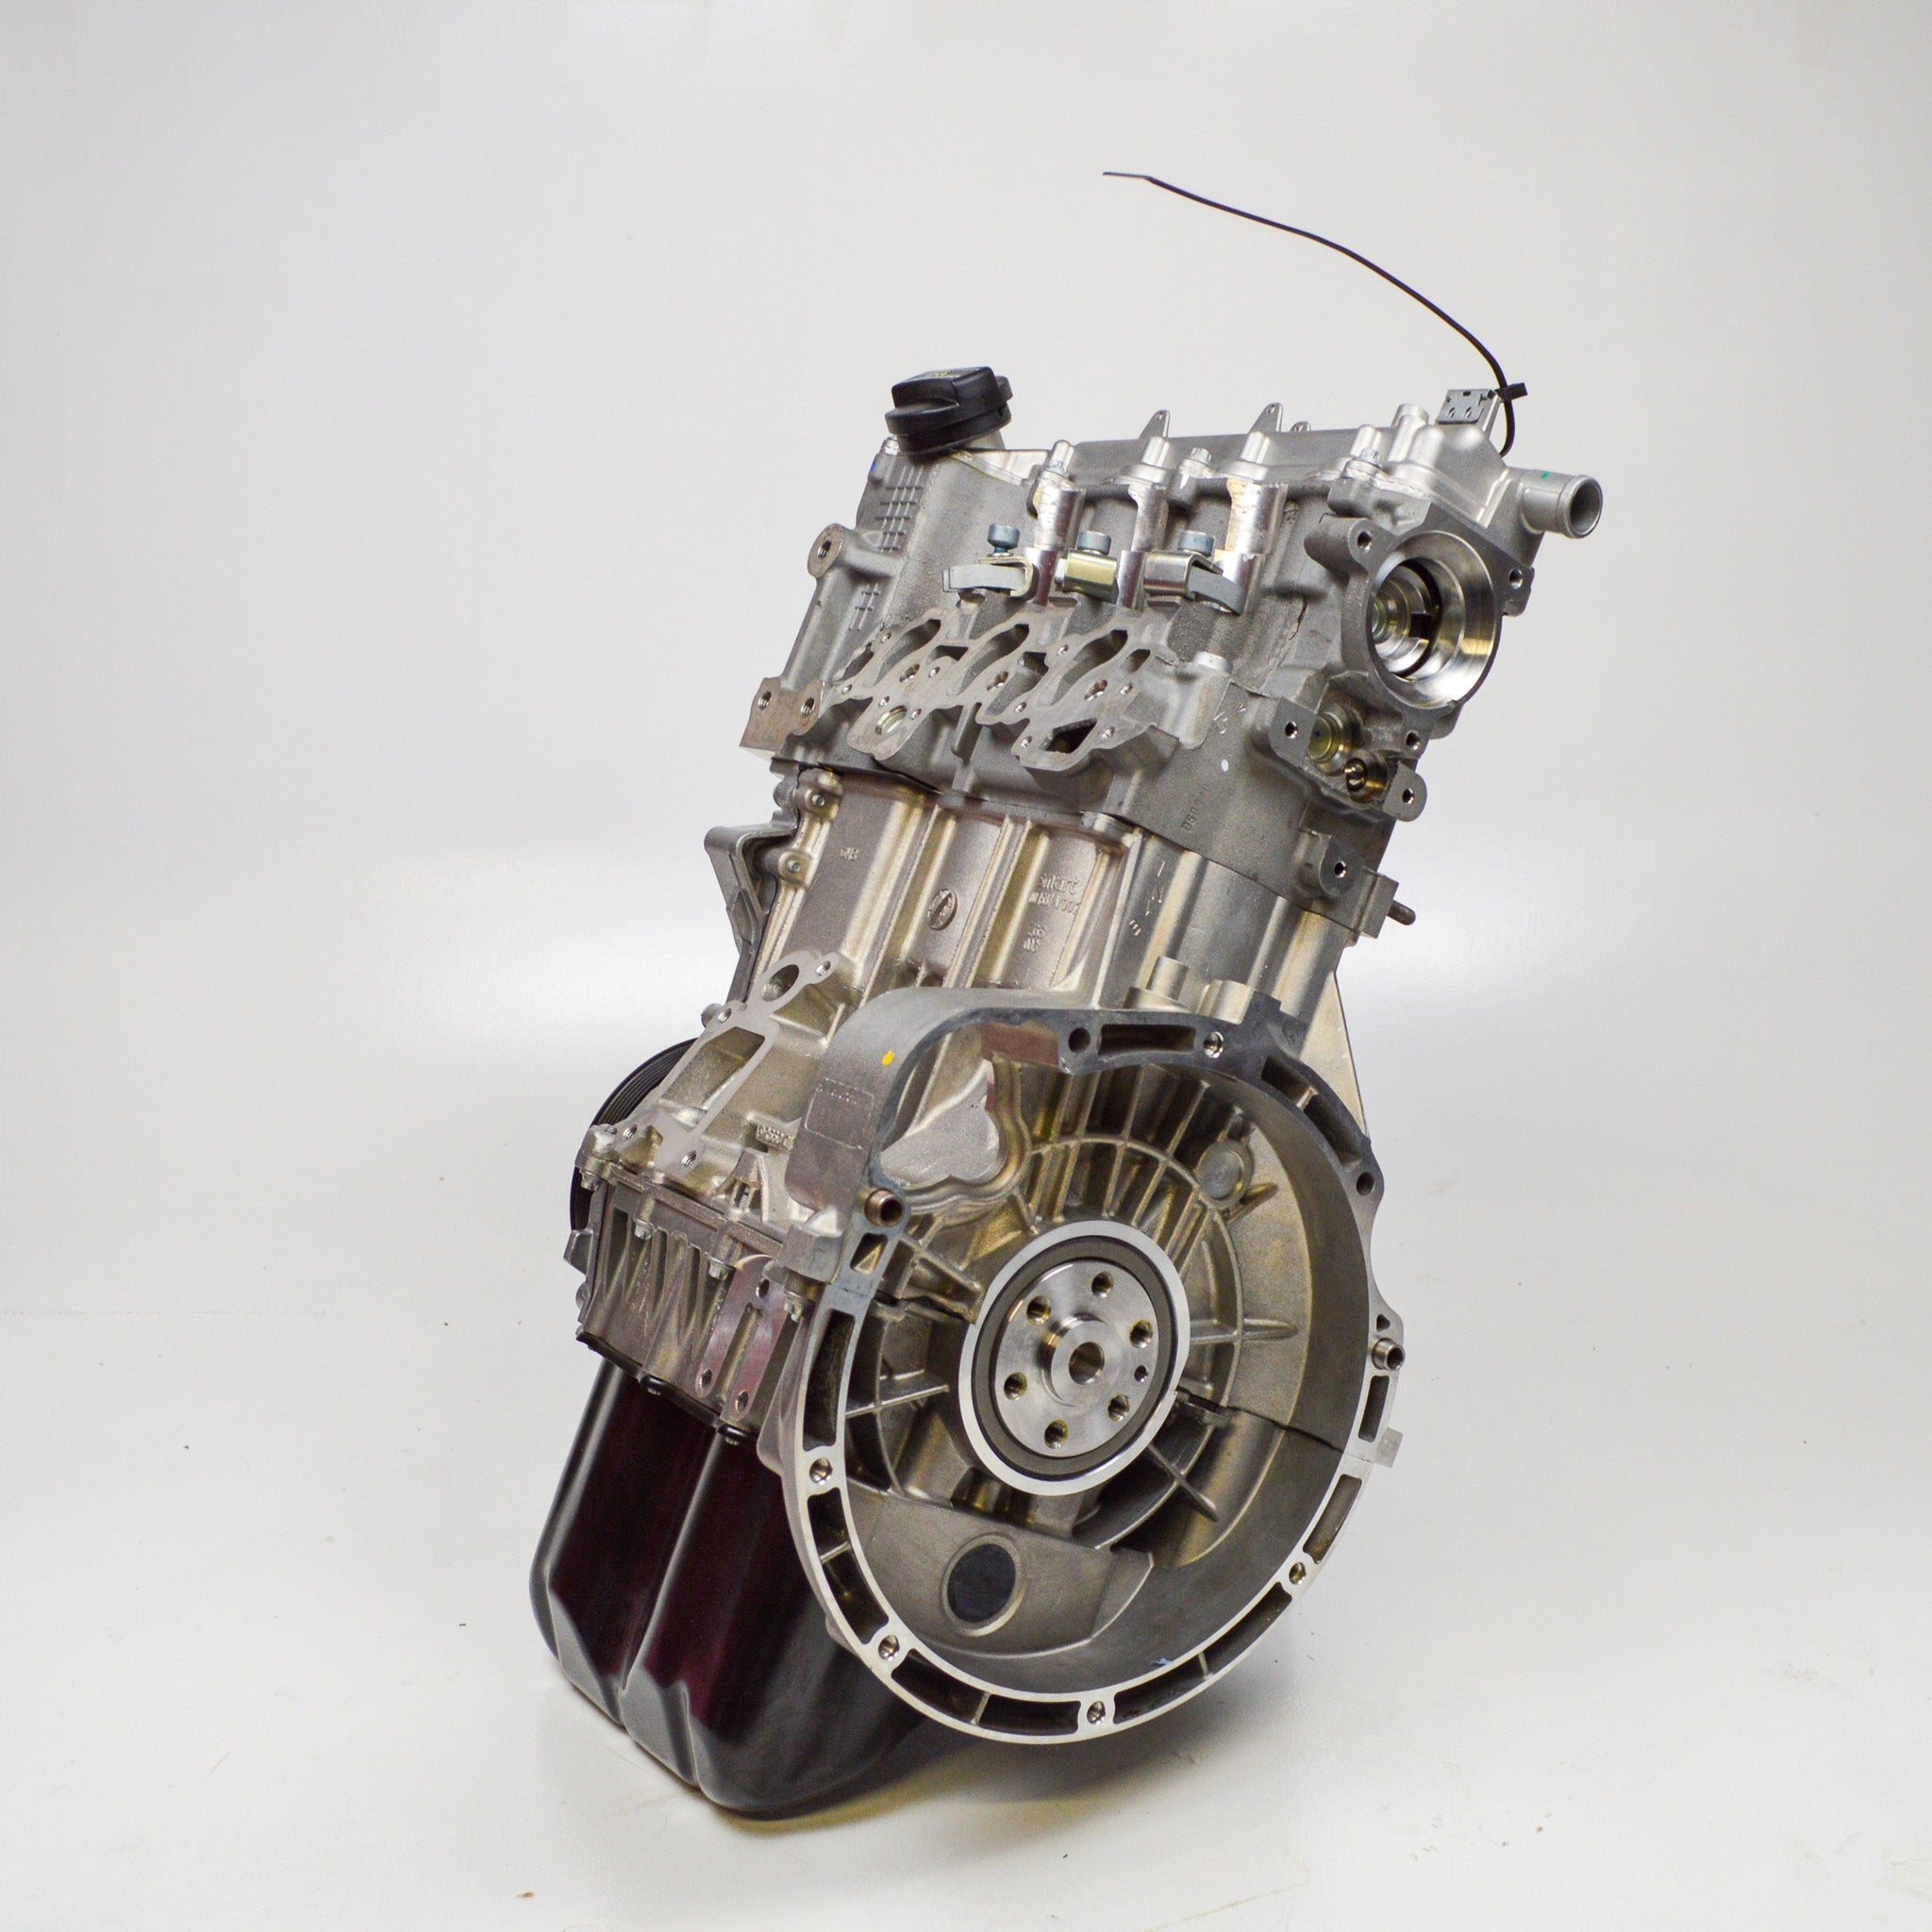 Smart 451 ForTwo moteur moteur court 799ccm CDI jusqu'à 2010 Euro 4 diesel A6600102000